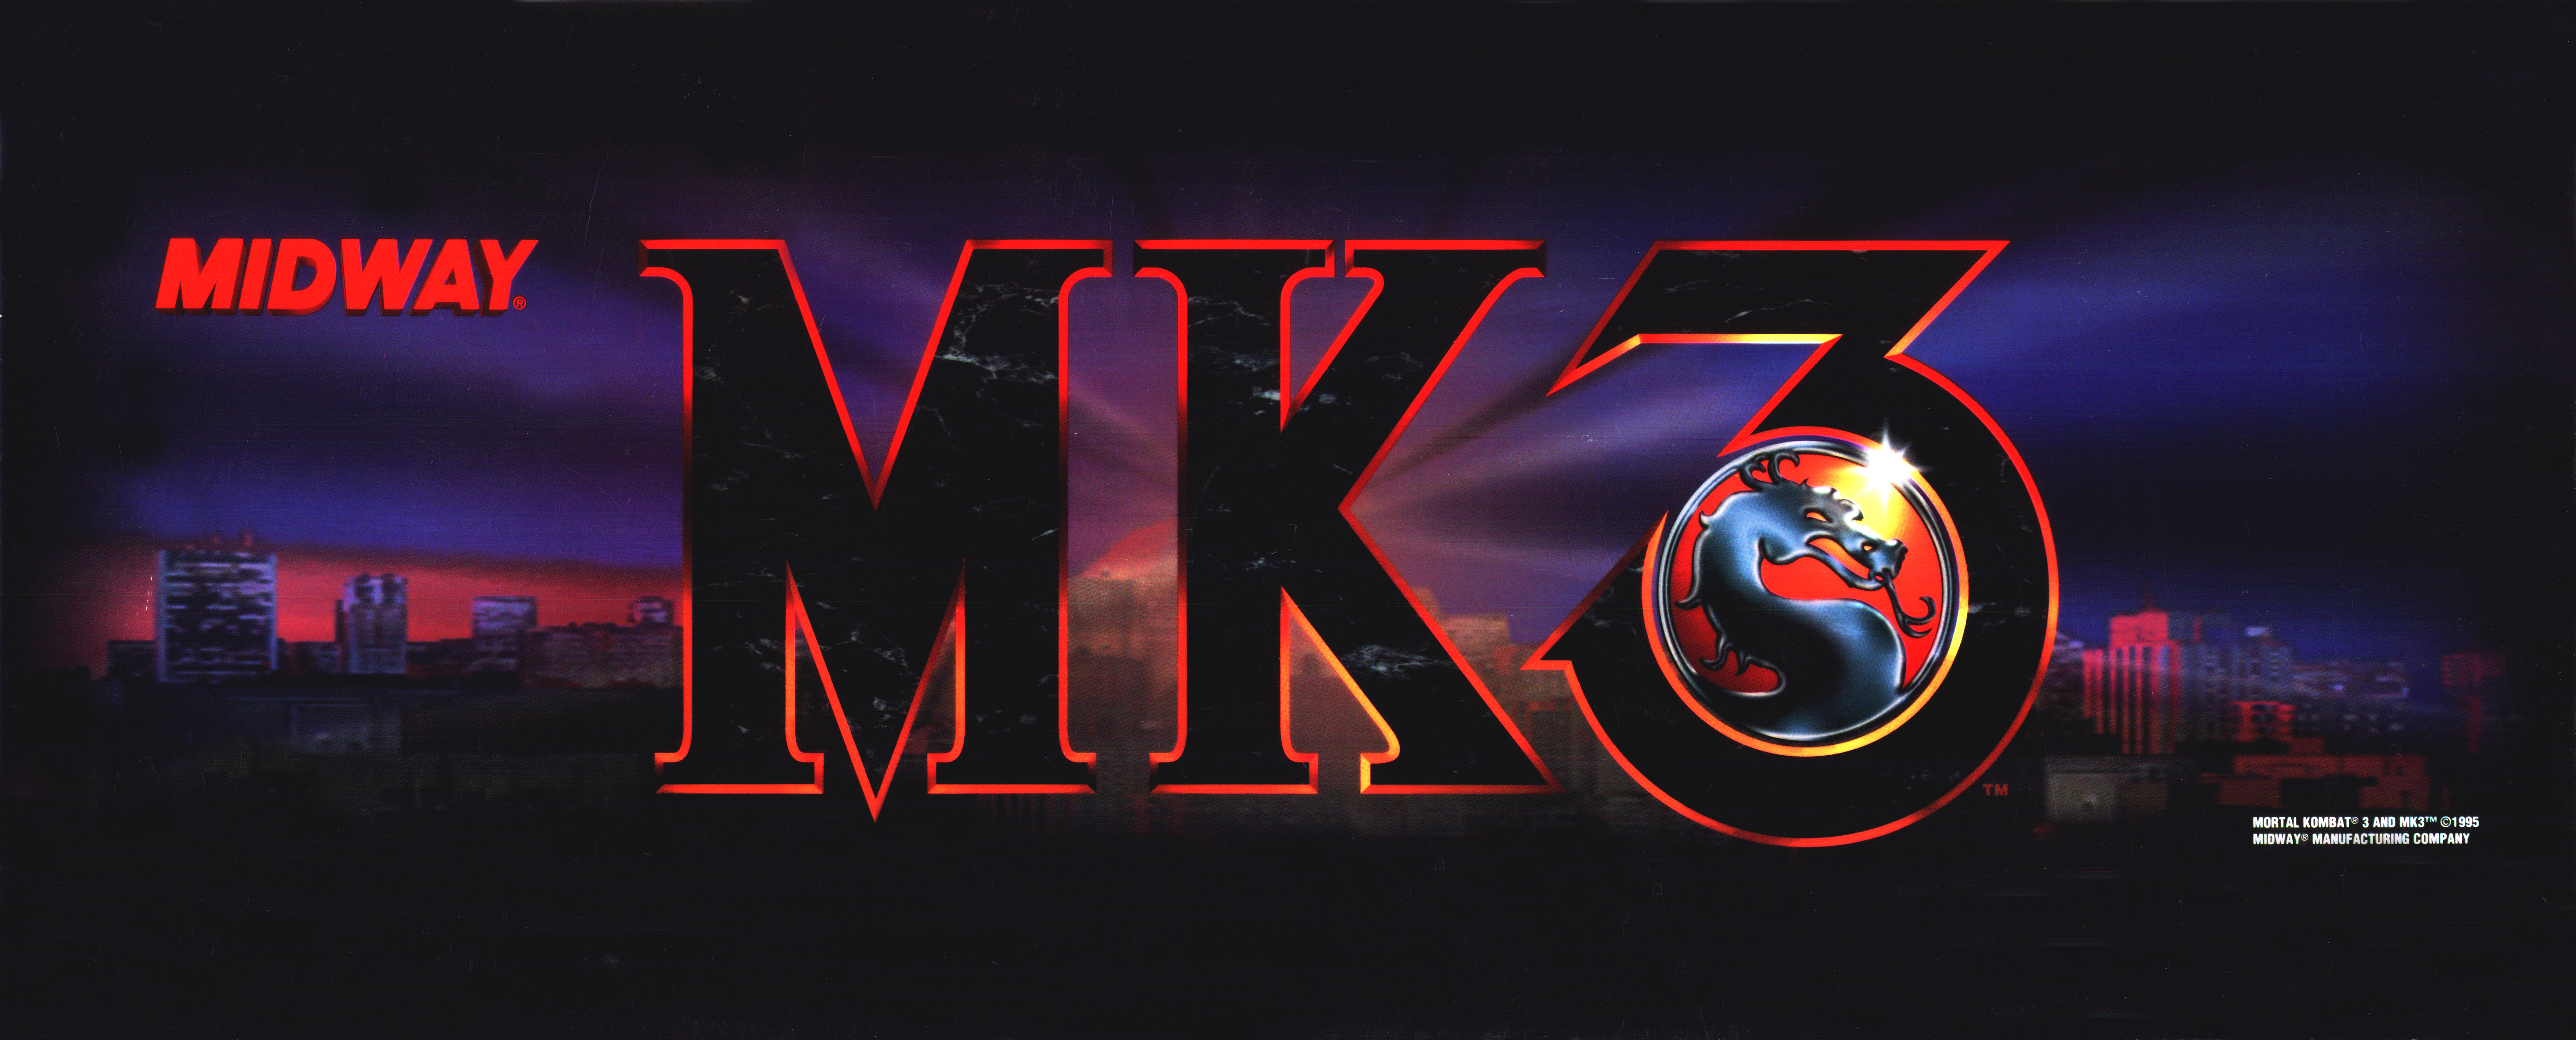 Бесплатная игра мортал комбат 3. Mk3 Ultimate. МК 3. Mortal Kombat 3. Mortal Kombat 3 Arcade.